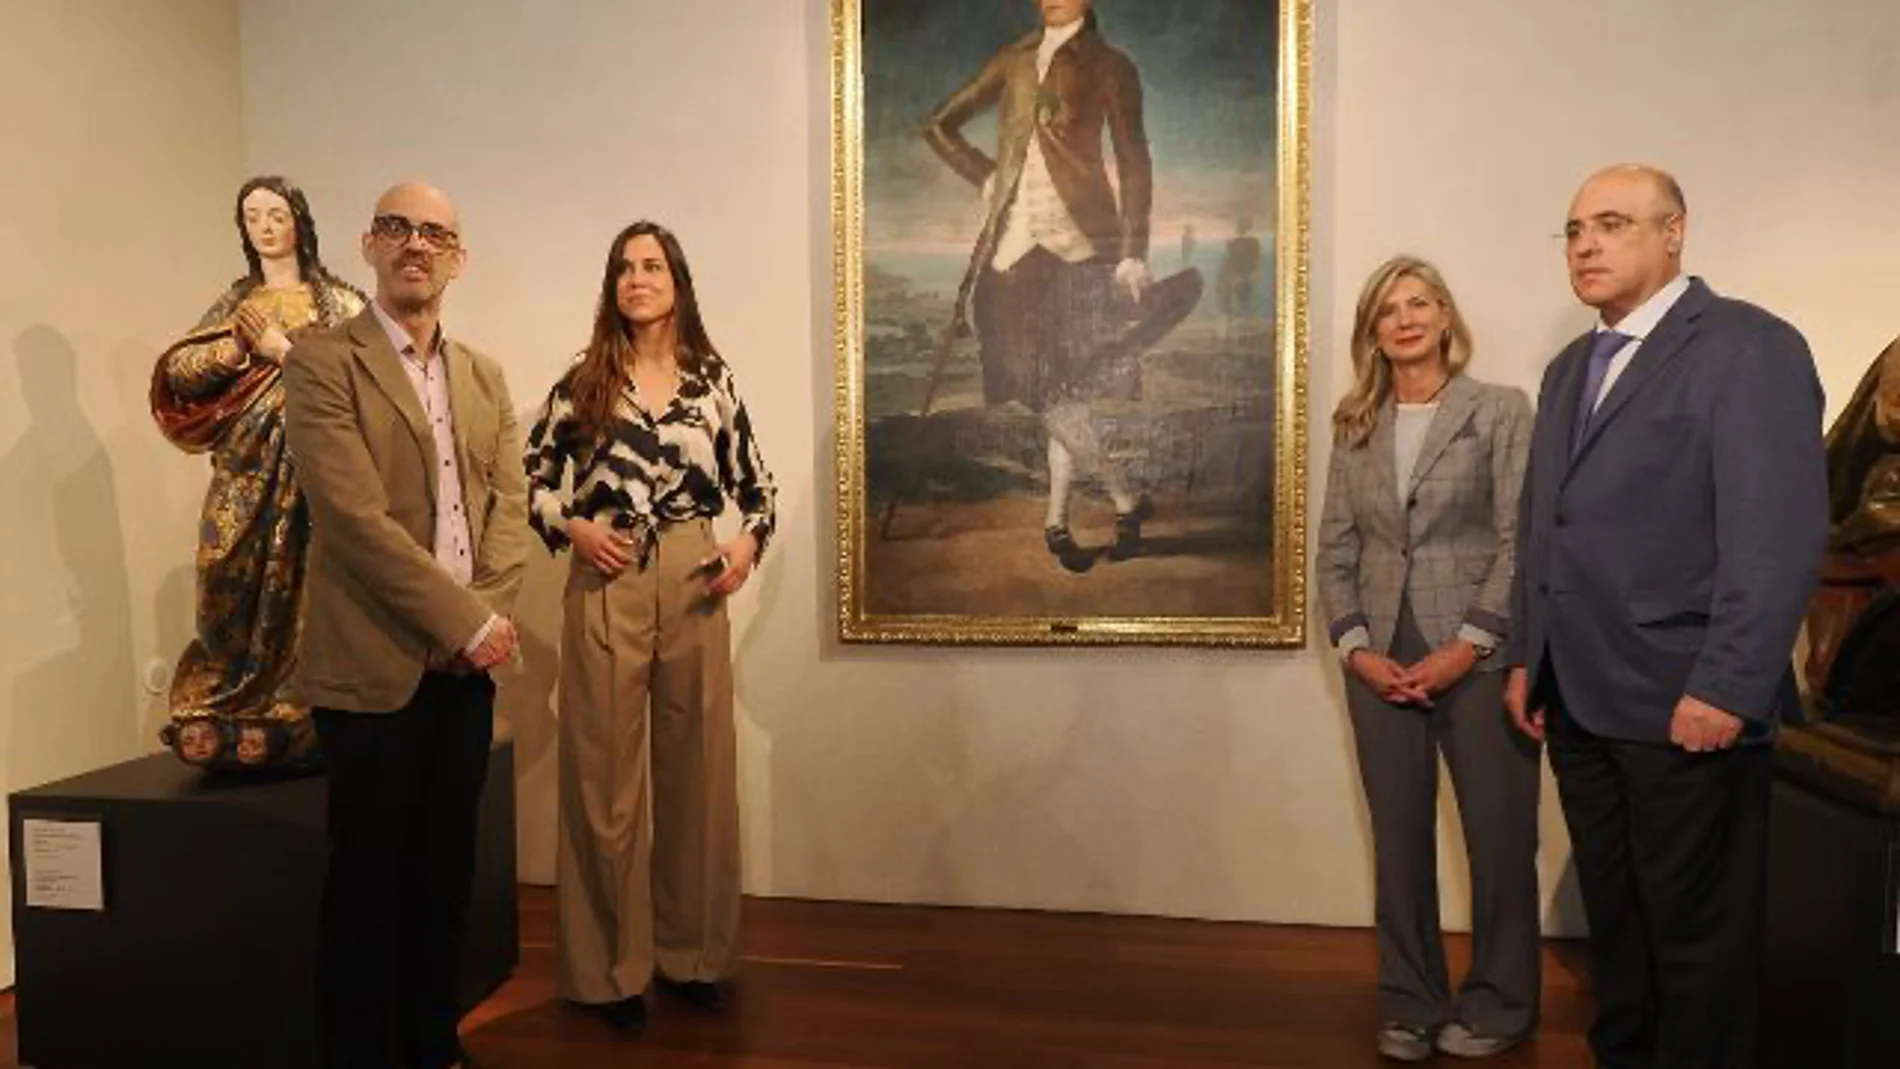 Presentación del "Retrato de Jovellanos" en el Museo Nacional de Escultura de Valladolid